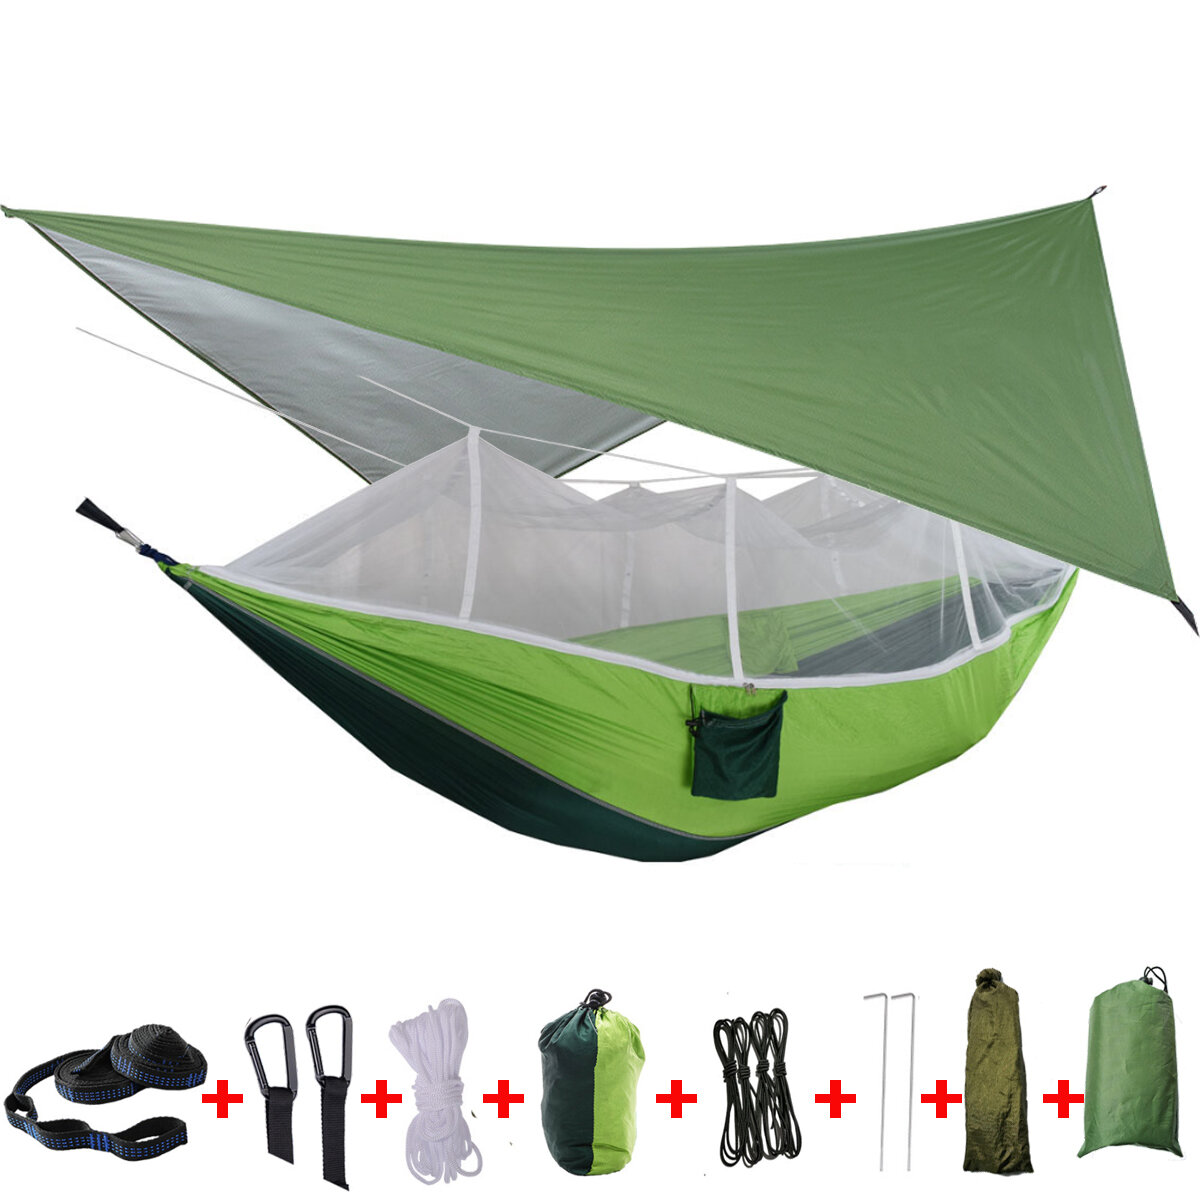 Tenda amaca da campeggio IPRee® per 2 persone con zanzariera, copertura antipioggia e letto doppio sospeso per viaggi all'aperto